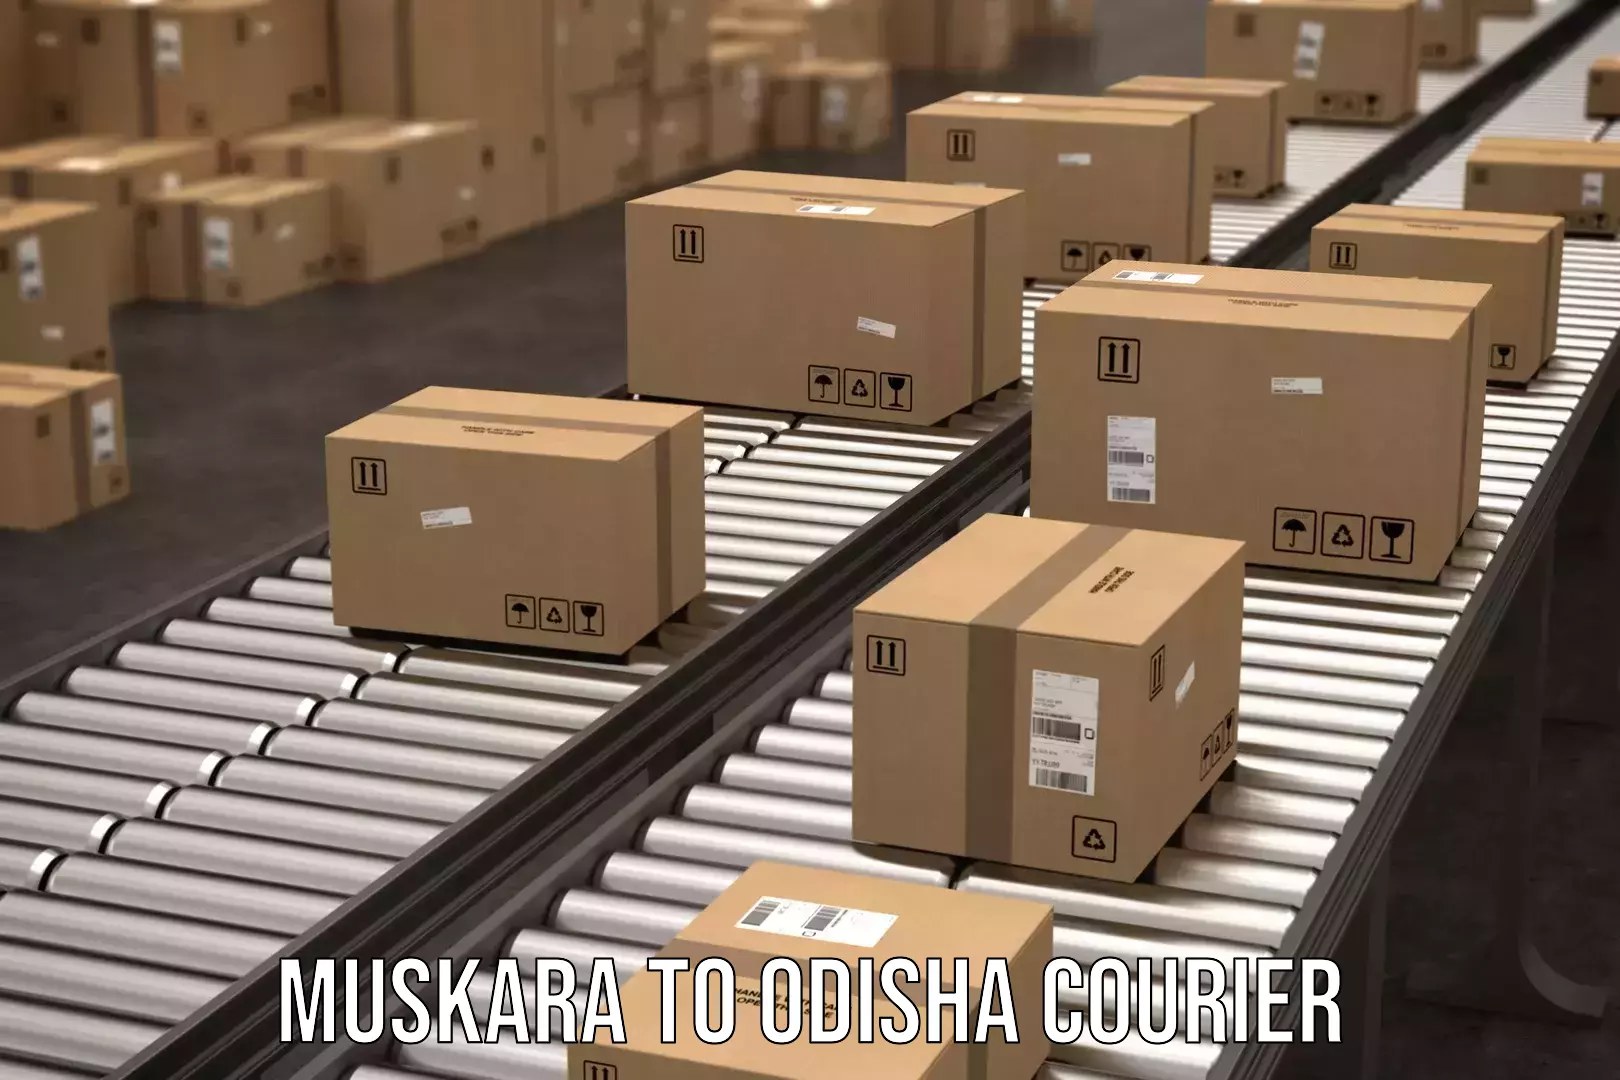 24-hour courier service Muskara to Swampatna